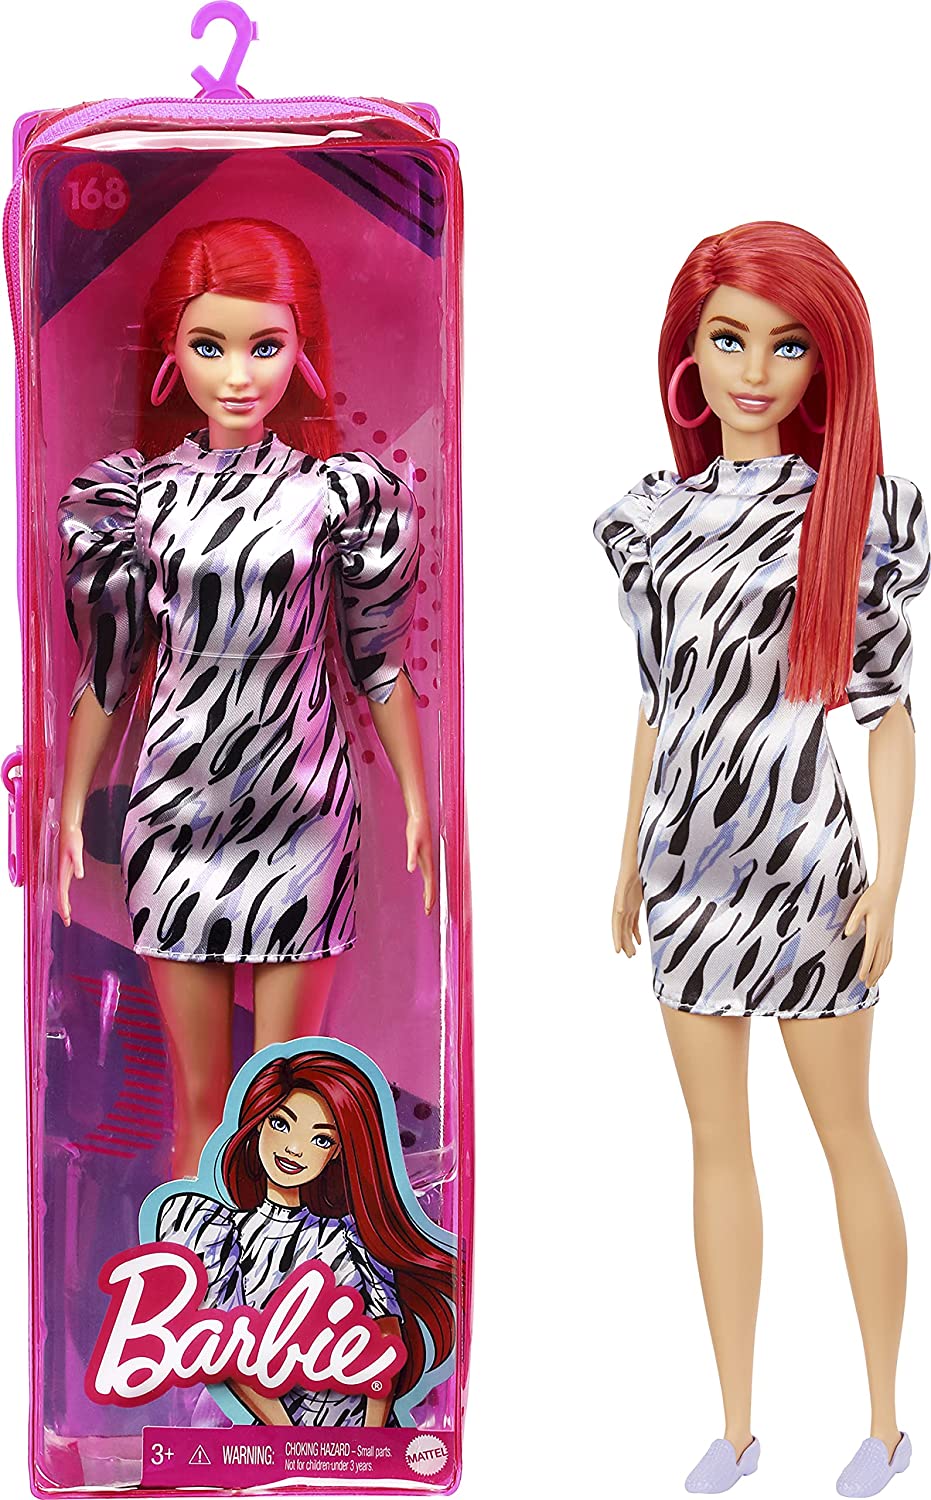 Merchandising Barbie: Mattel - Fashionista Doll Vol 168 / Bambola Con Capelli Rossi, Vestito Zebrato e Orecchini NUOVO SIGILLATO, EDIZIONE DEL 03/08/2021 SUBITO DISPONIBILE